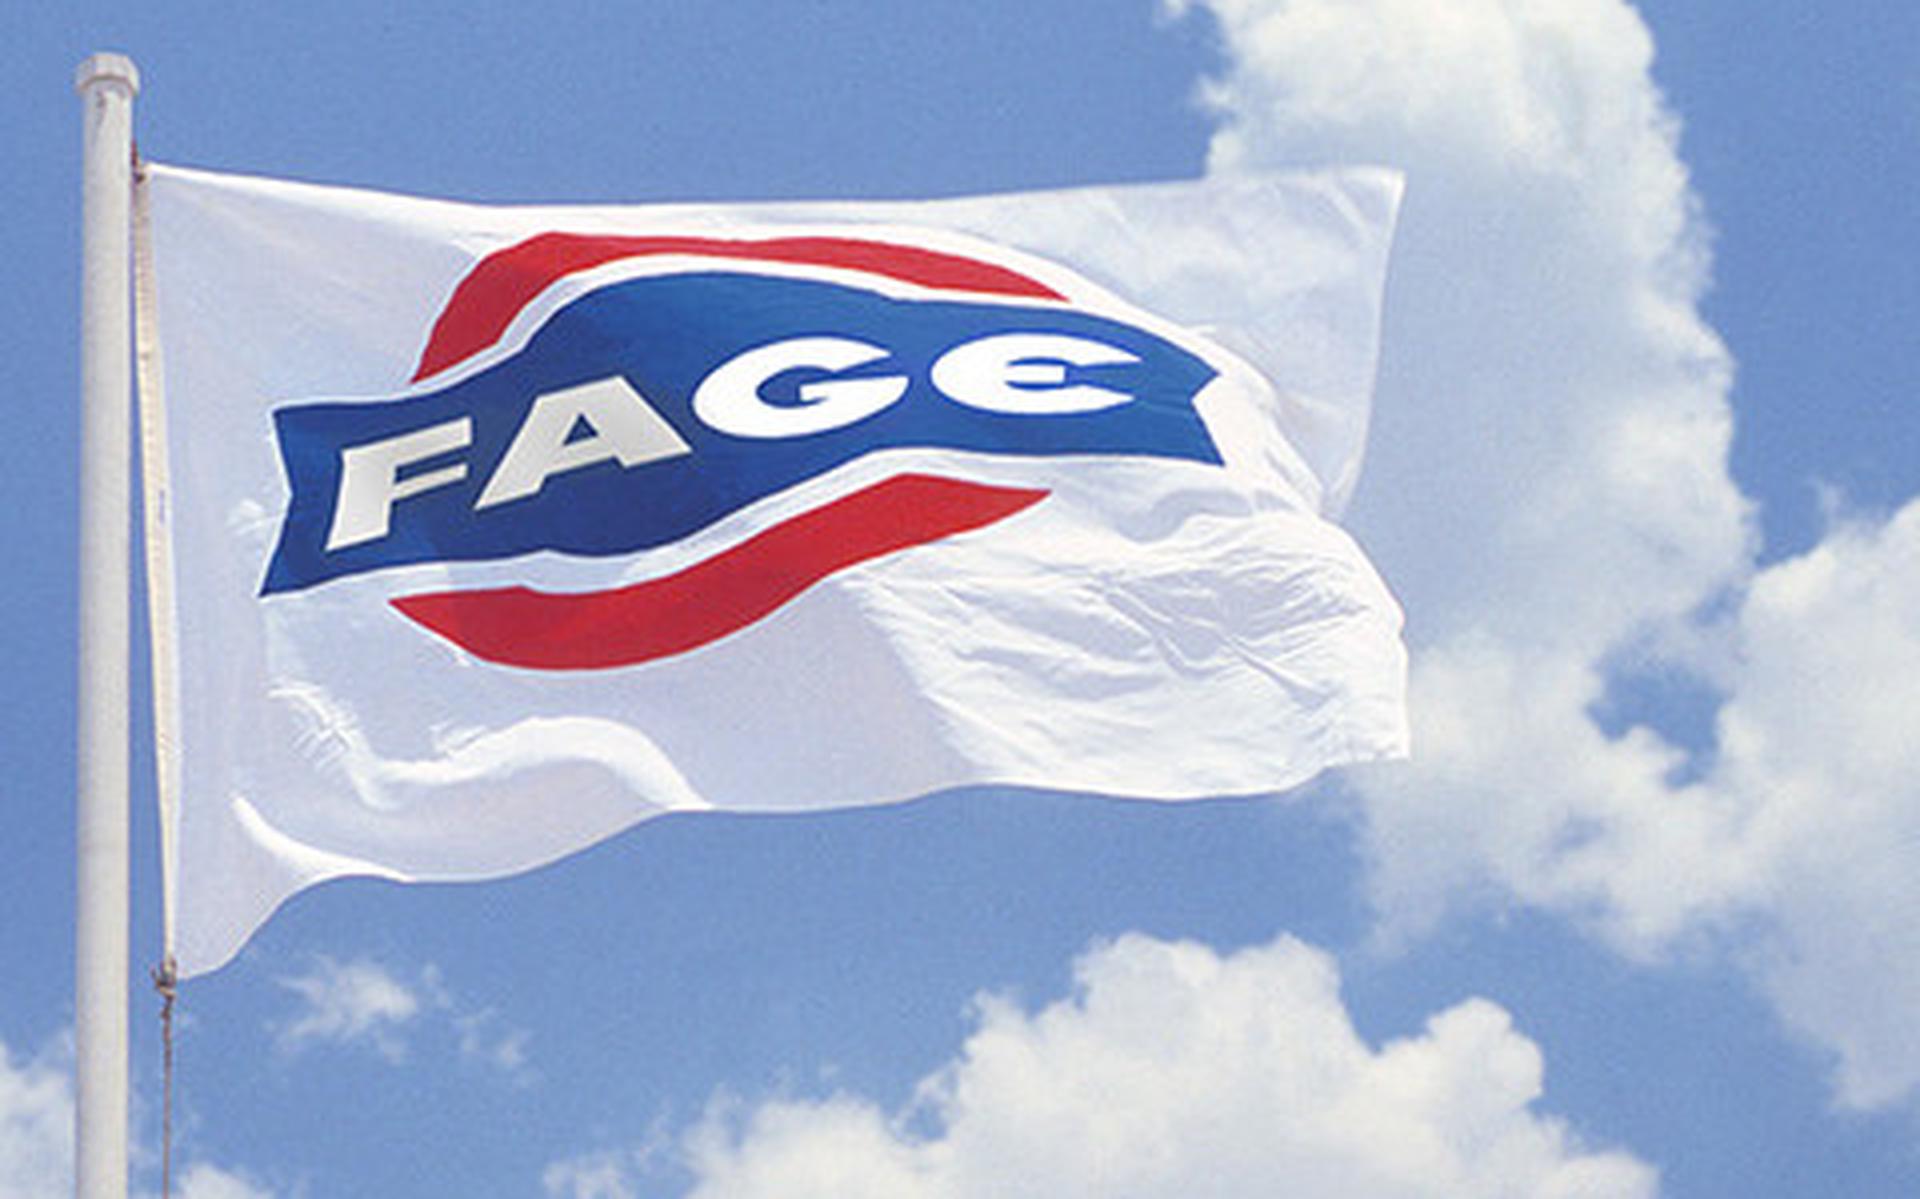 Fage hoopt de vlag in 2026 op bedrijventerrein Riegmeer in Hoogeveen te kunnen laten wapperen.